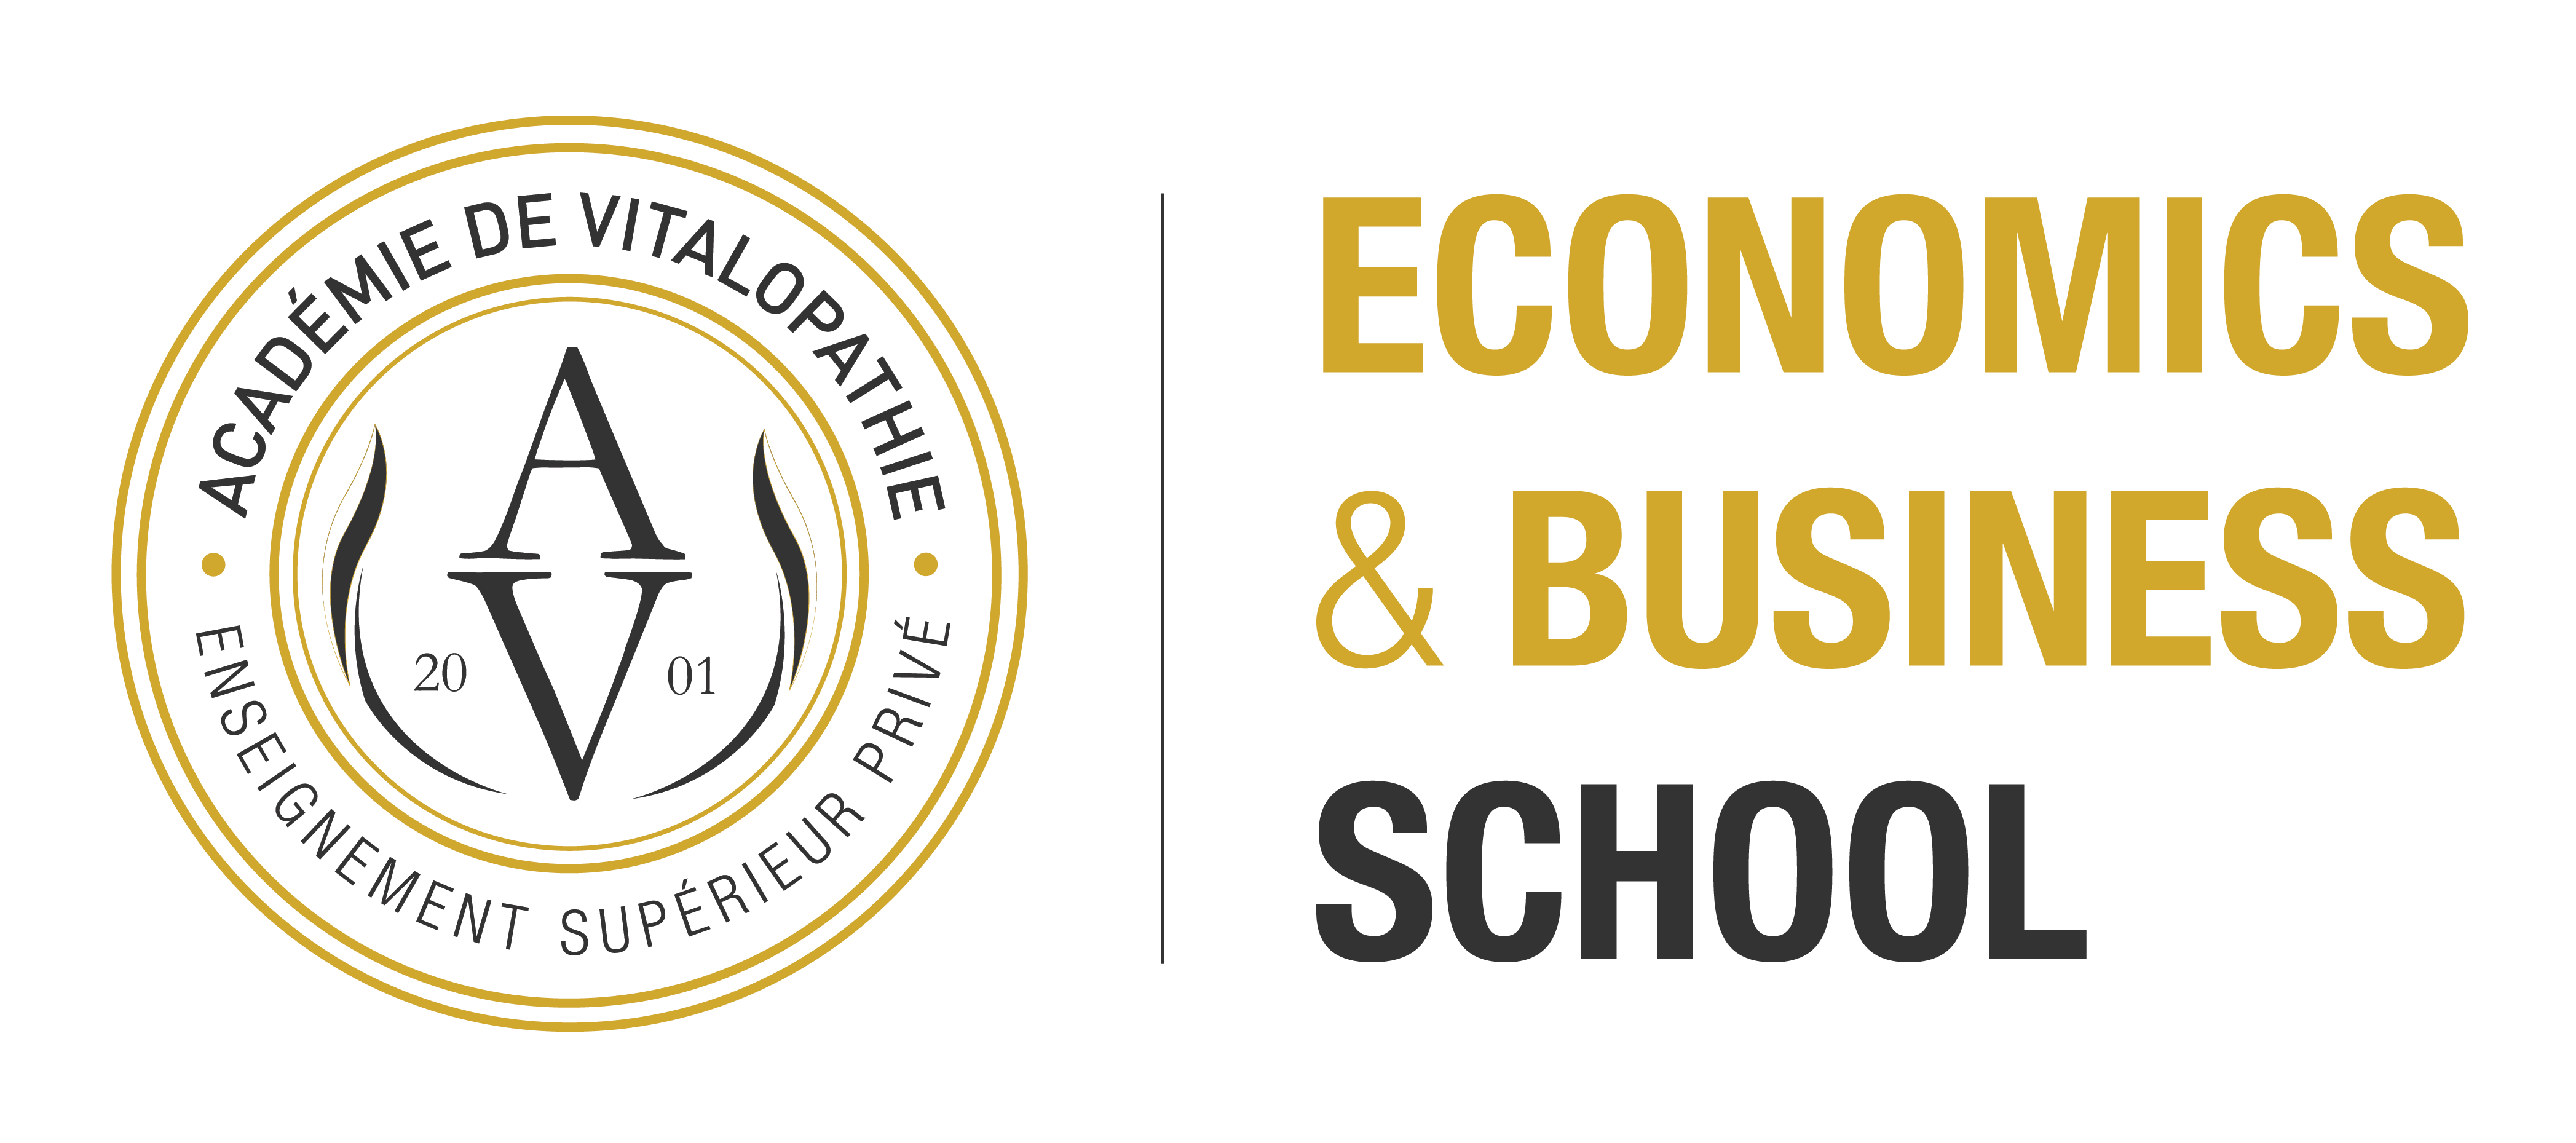 Economics & Business School - Académie de Vitalopathie - Enseignement Supérieur Privé